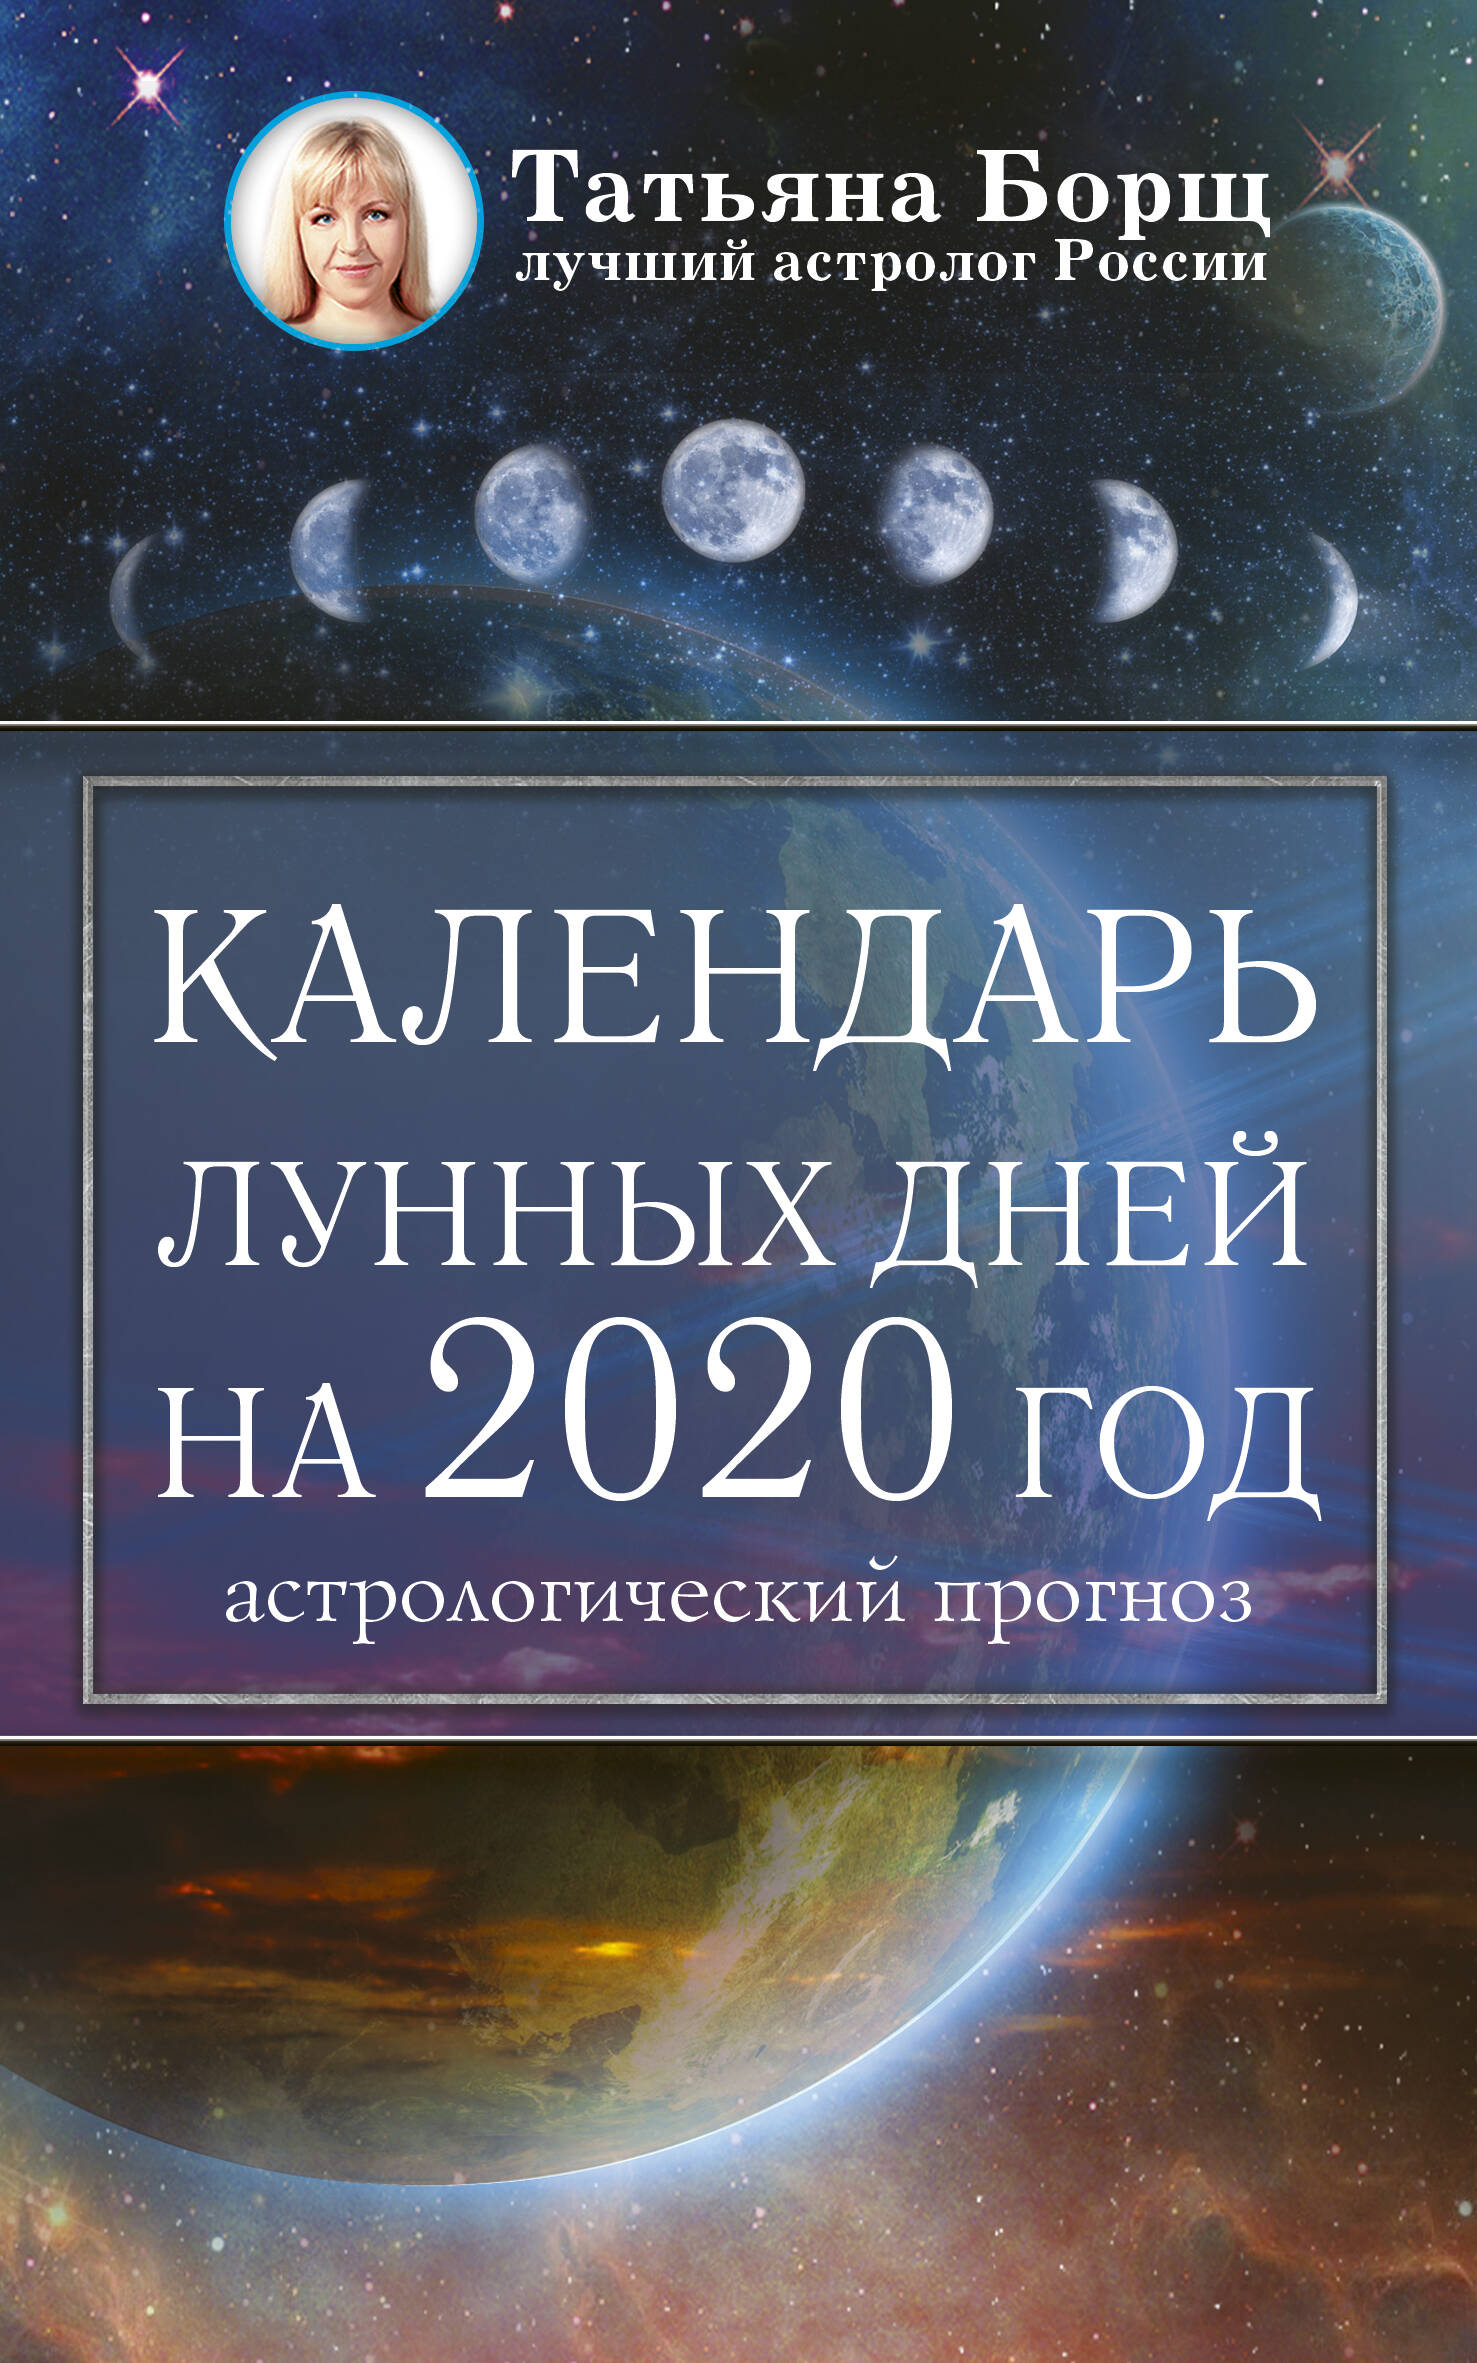 Календарь лунных дней на 2020 год: астрологический прогноз. Борщ Т.